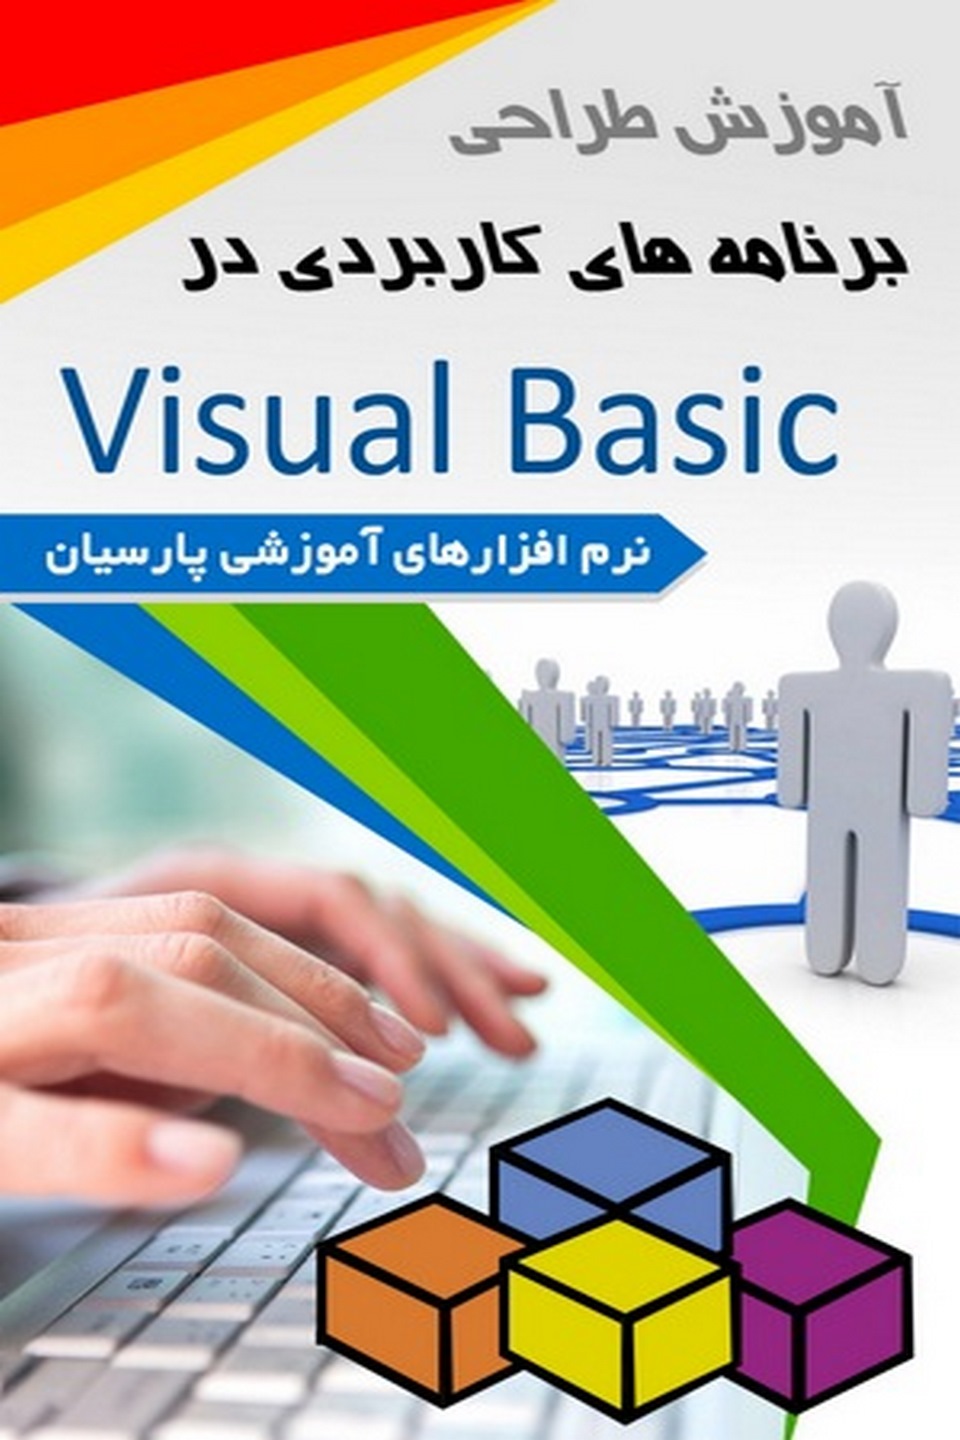 آموزش برنامه کاربردی Visual Basic